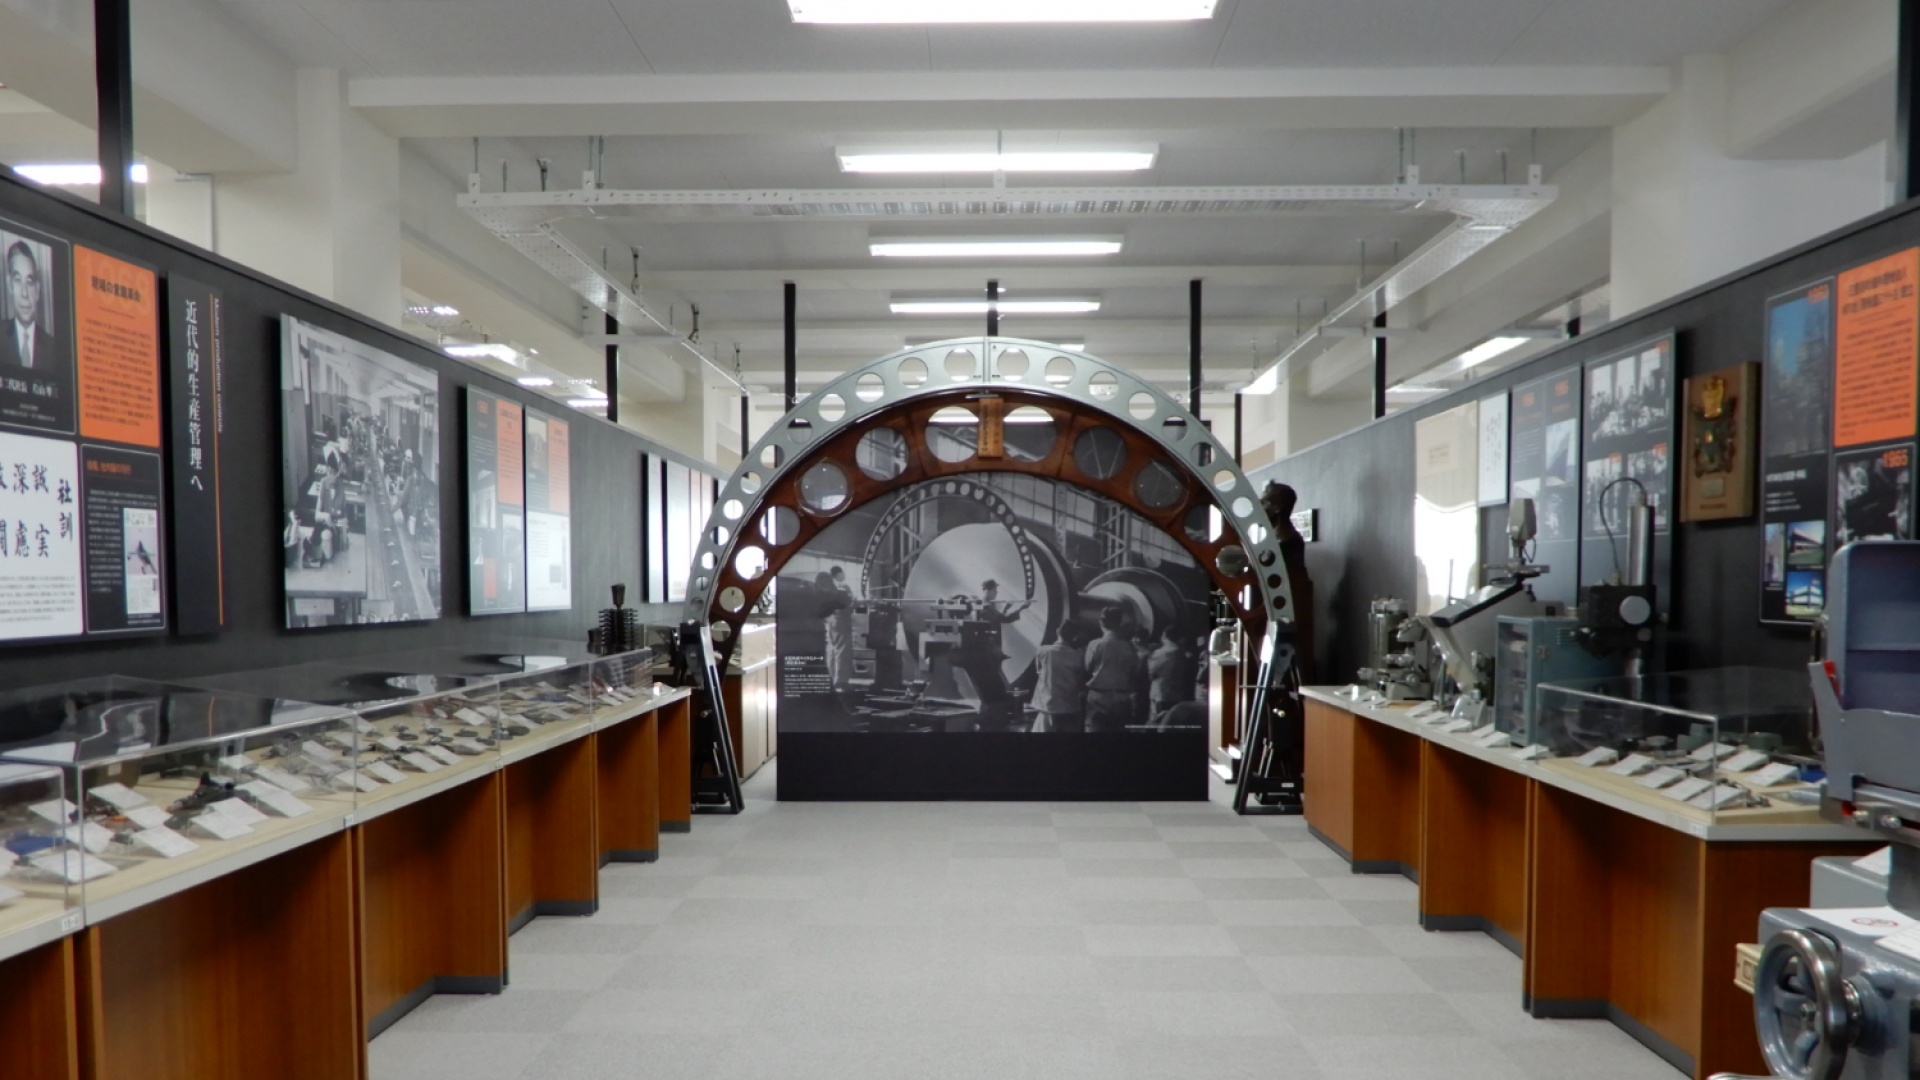 Bảo tàng Mitutoyo (Hội trường Tưởng niệm Numata / Bảo tàng Thiết bị đo lường)